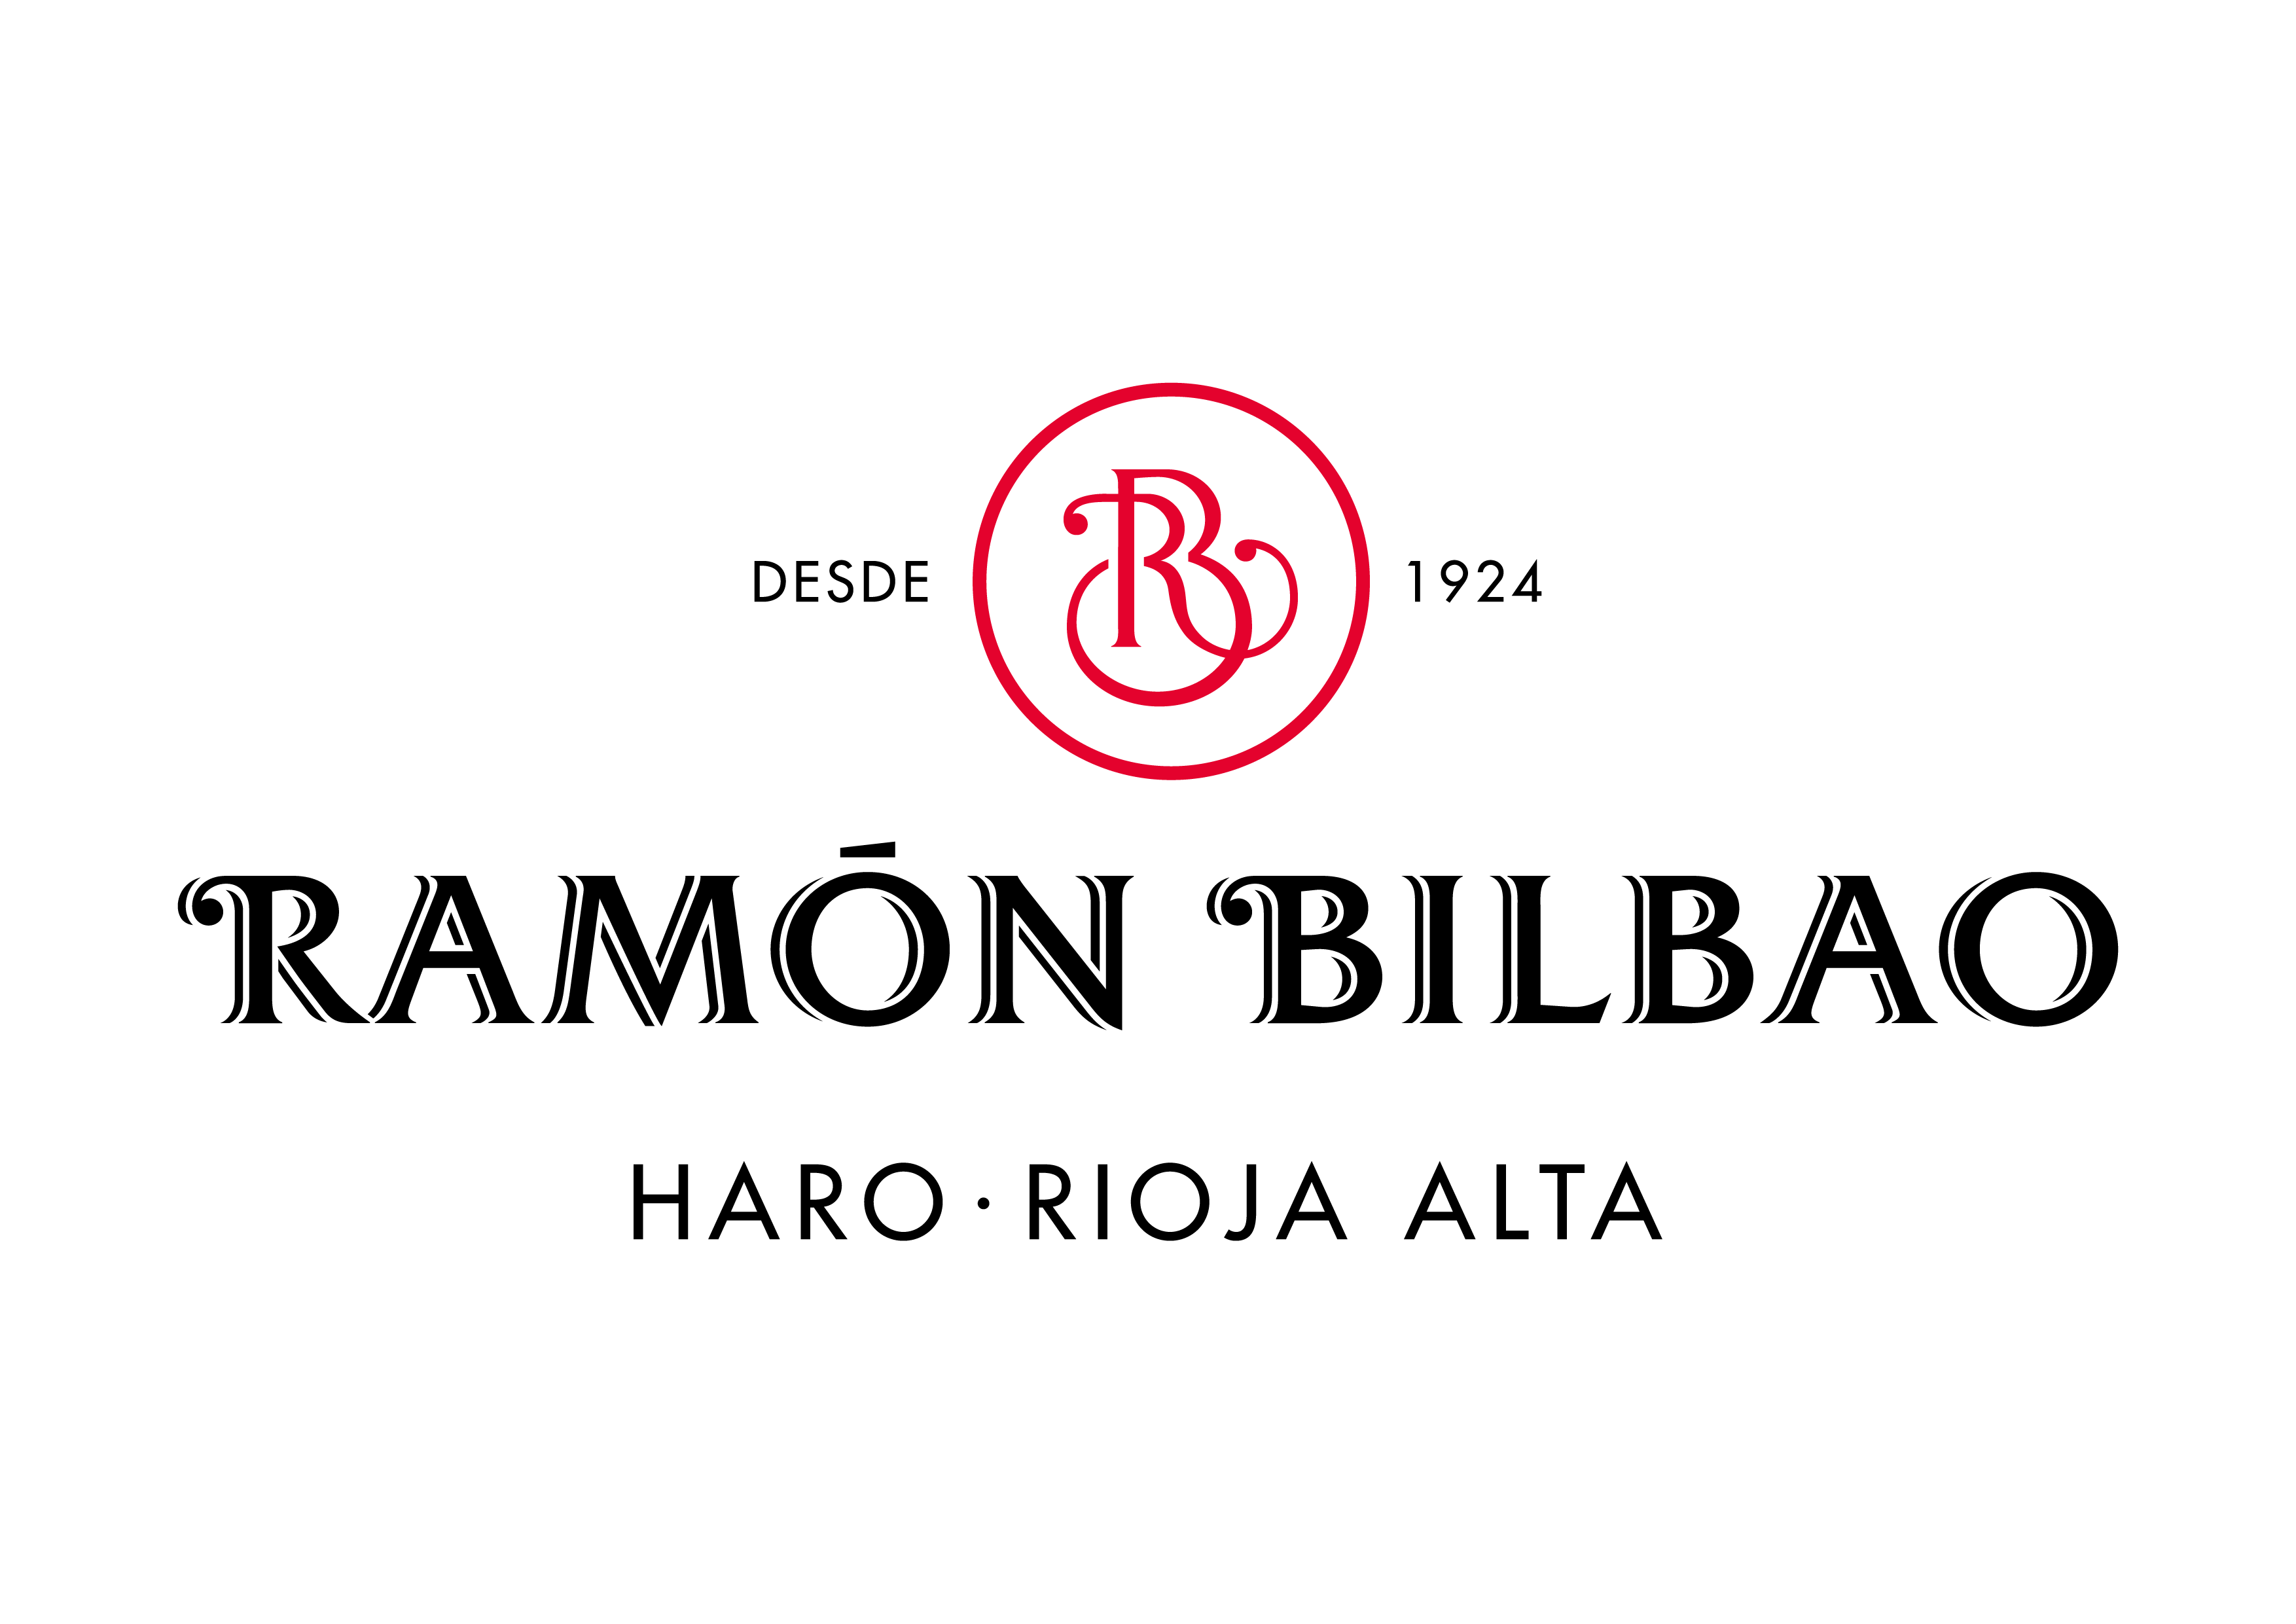 Deutsch Logo - Ramón Bilbao Logos - Deutsch Family Wine & SpiritsDeutsch Family ...